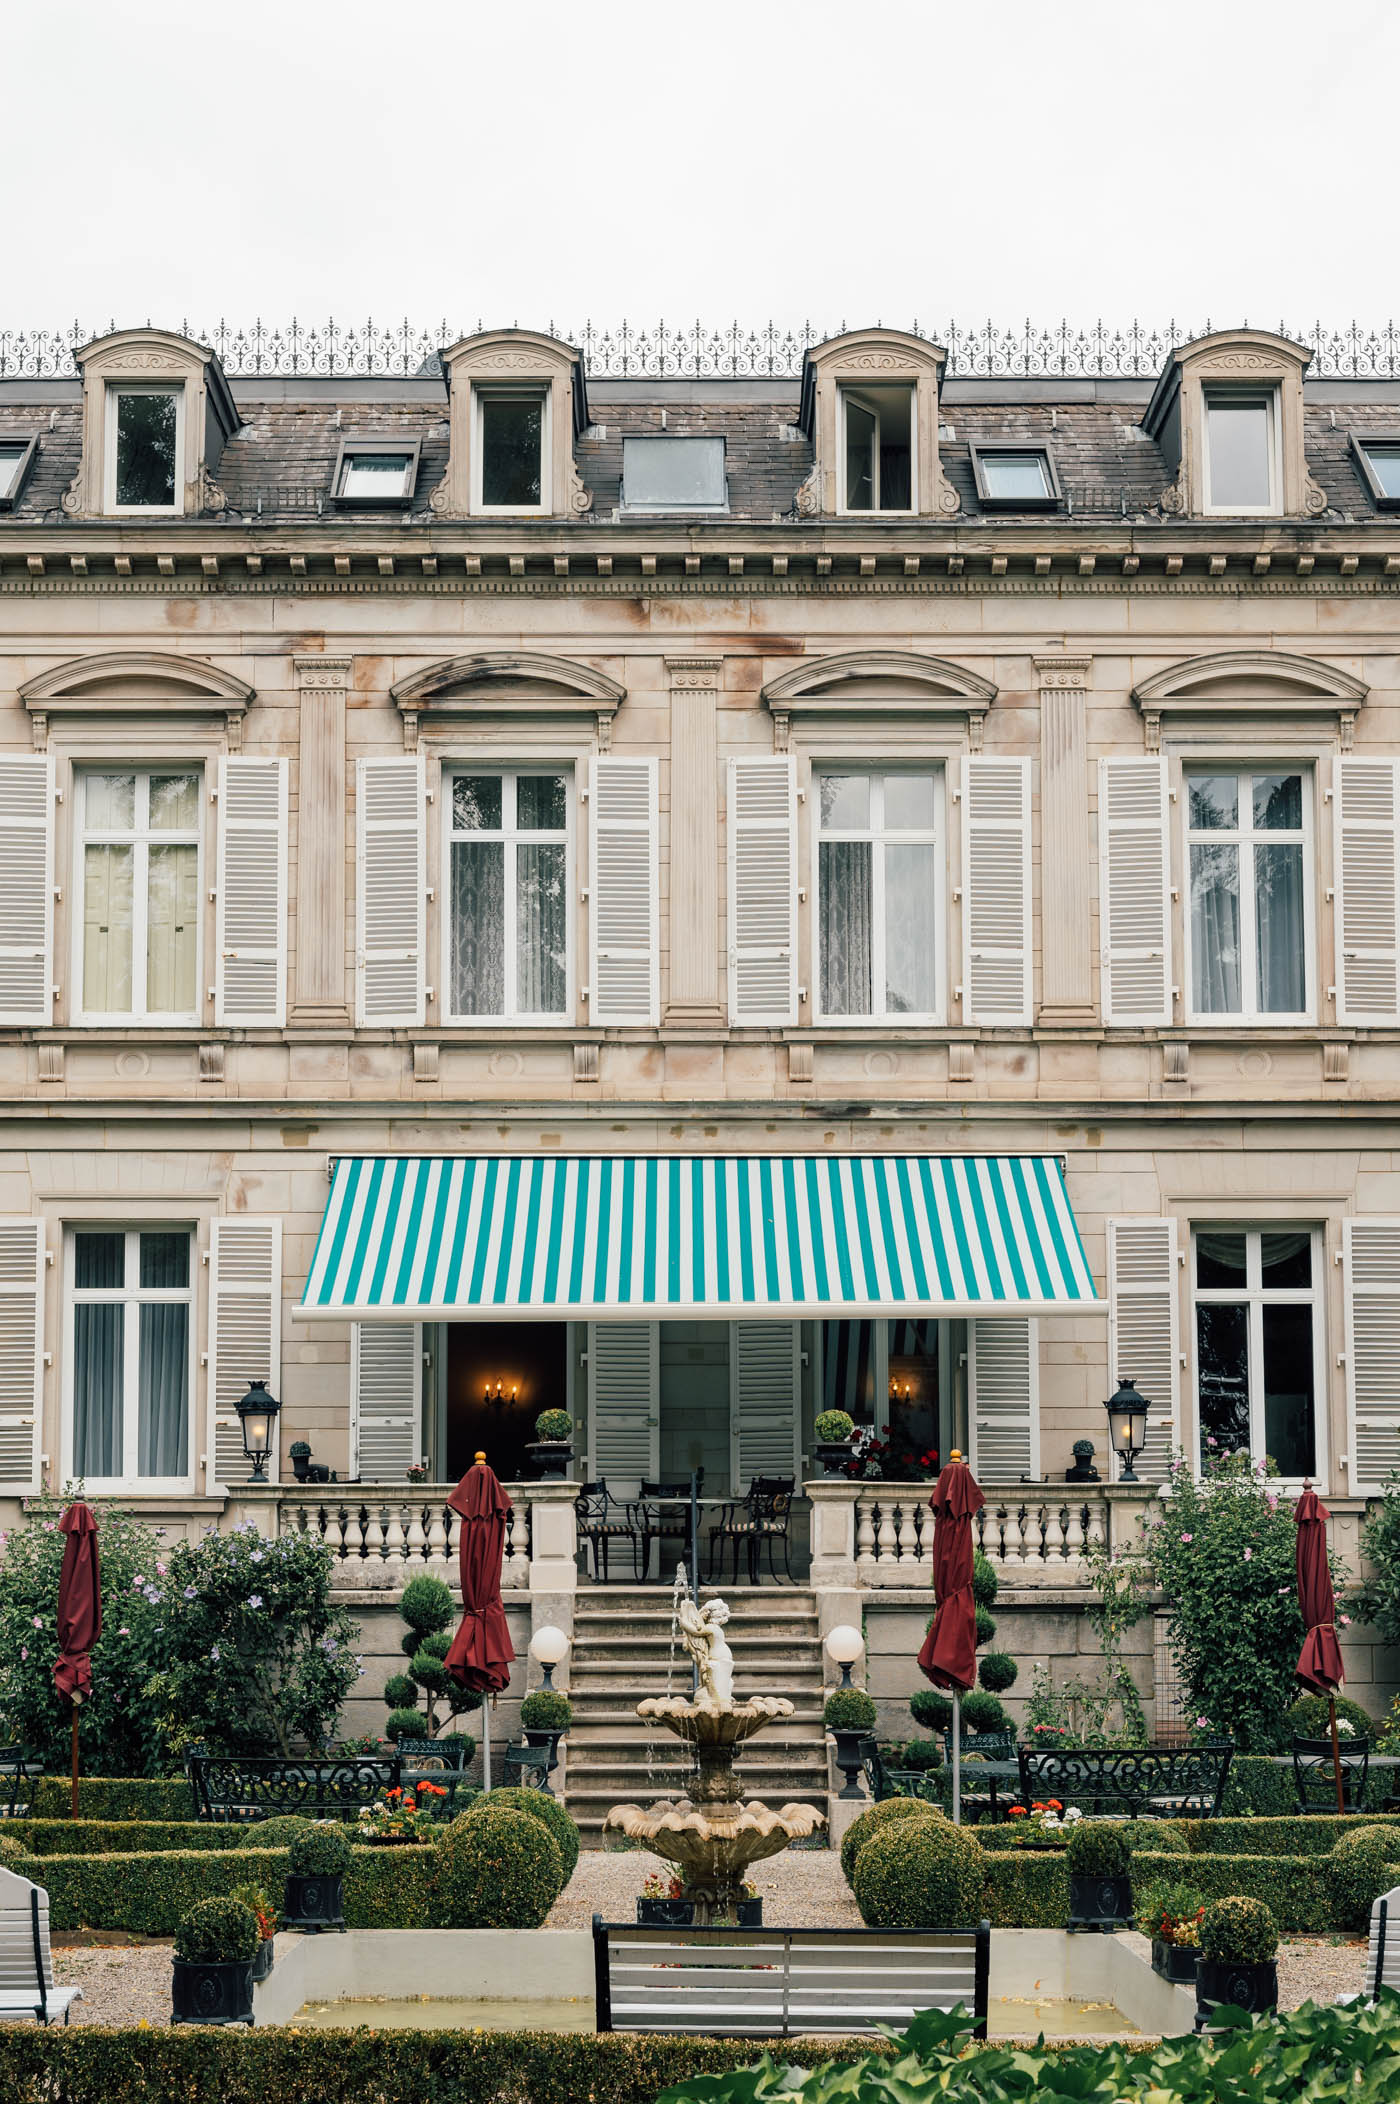 Hotel Belle Epoque in Baden-Baden Great Spas of Europe in Germany